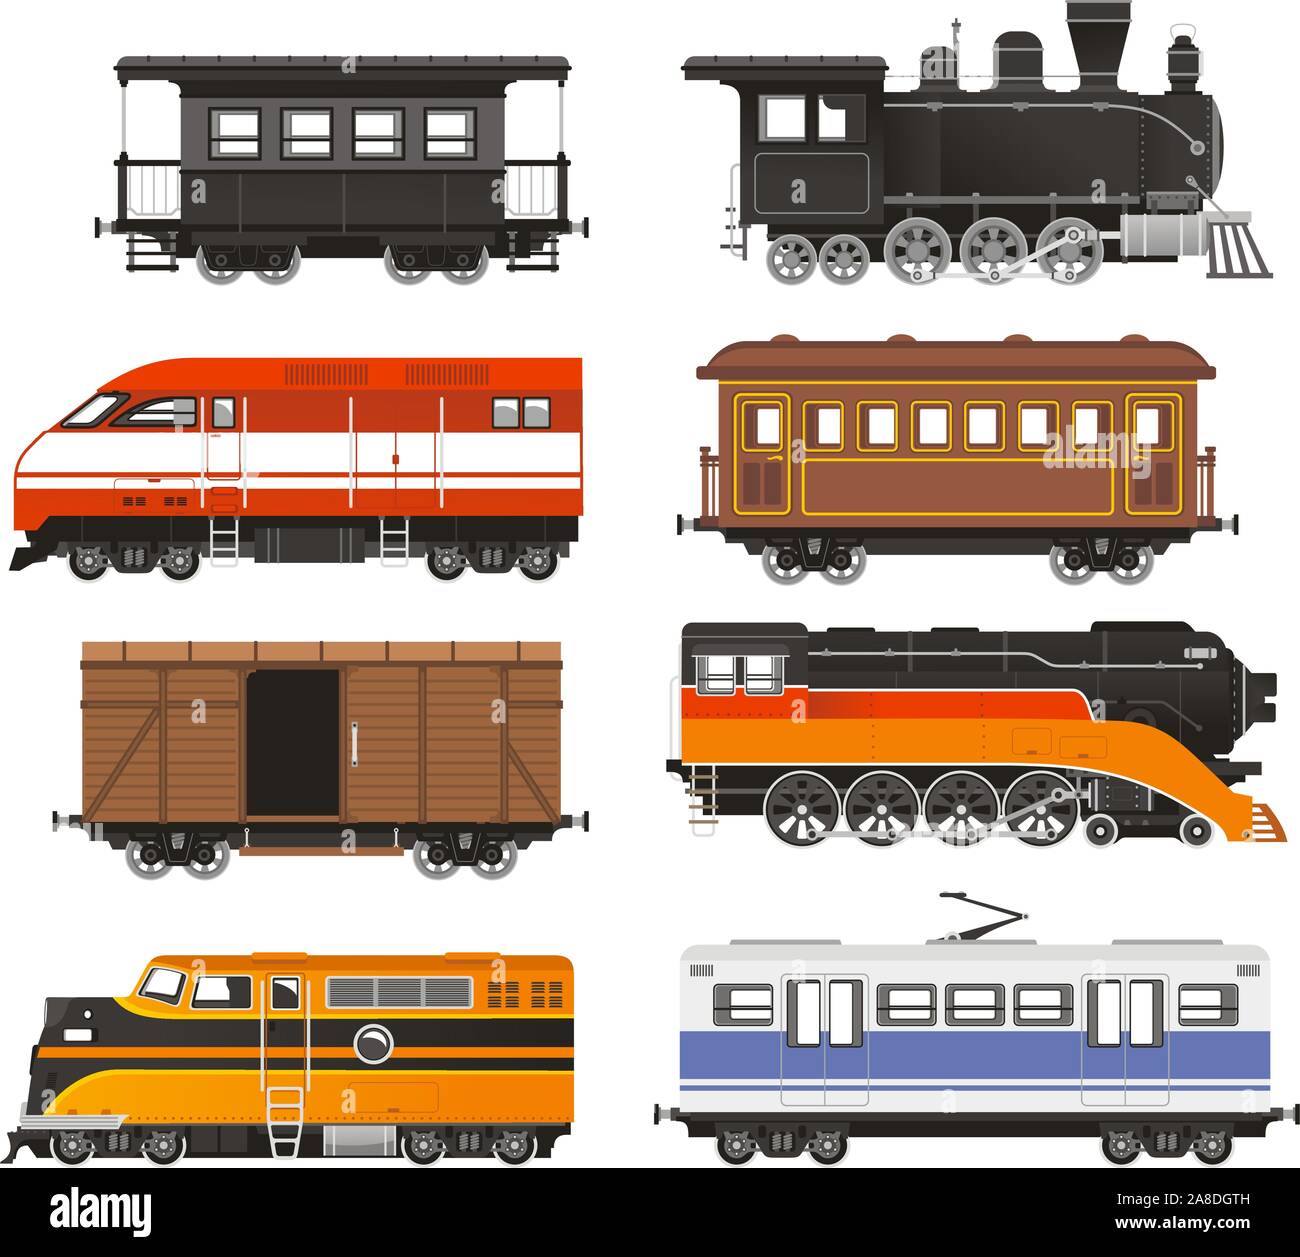 Train Locomotive Transportation Railway Transport vector illustration. Stock Vector